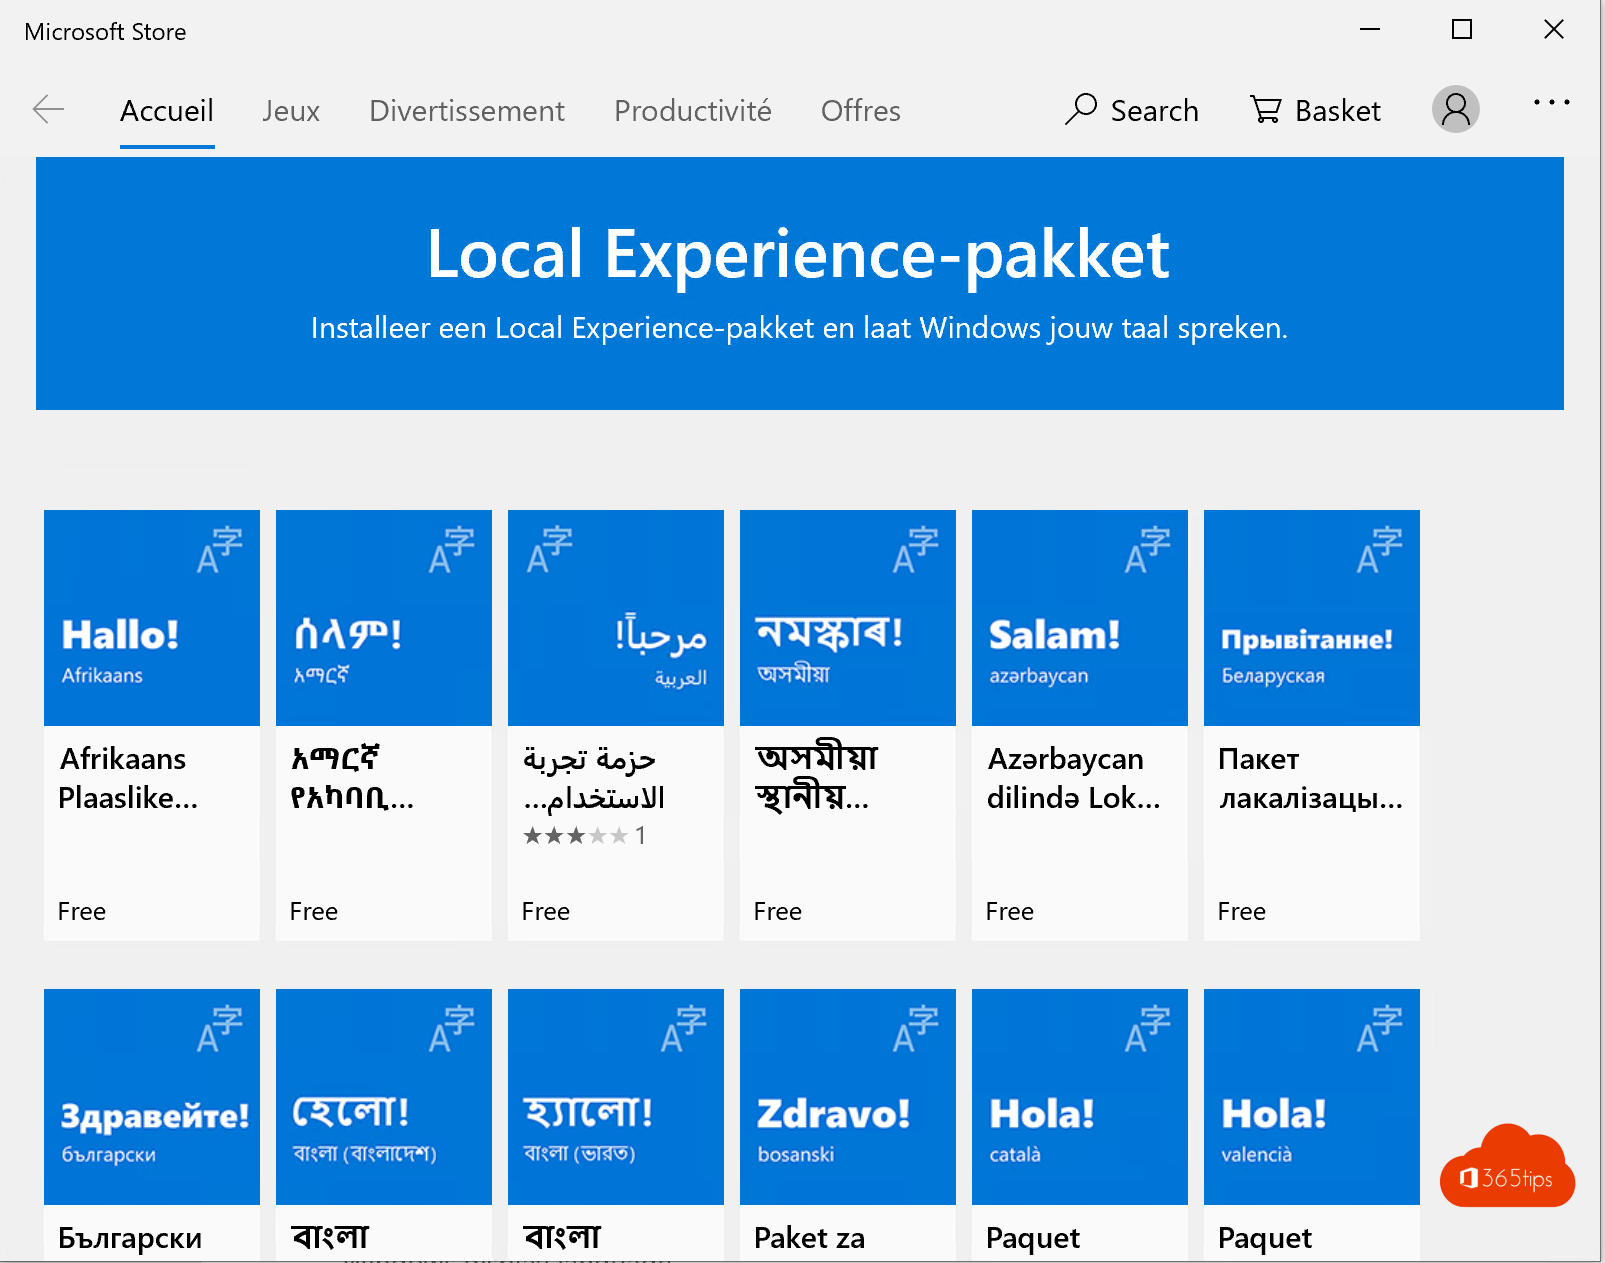 Comment changer la langue du site Windows 10 en Belgique - néerlandais ?